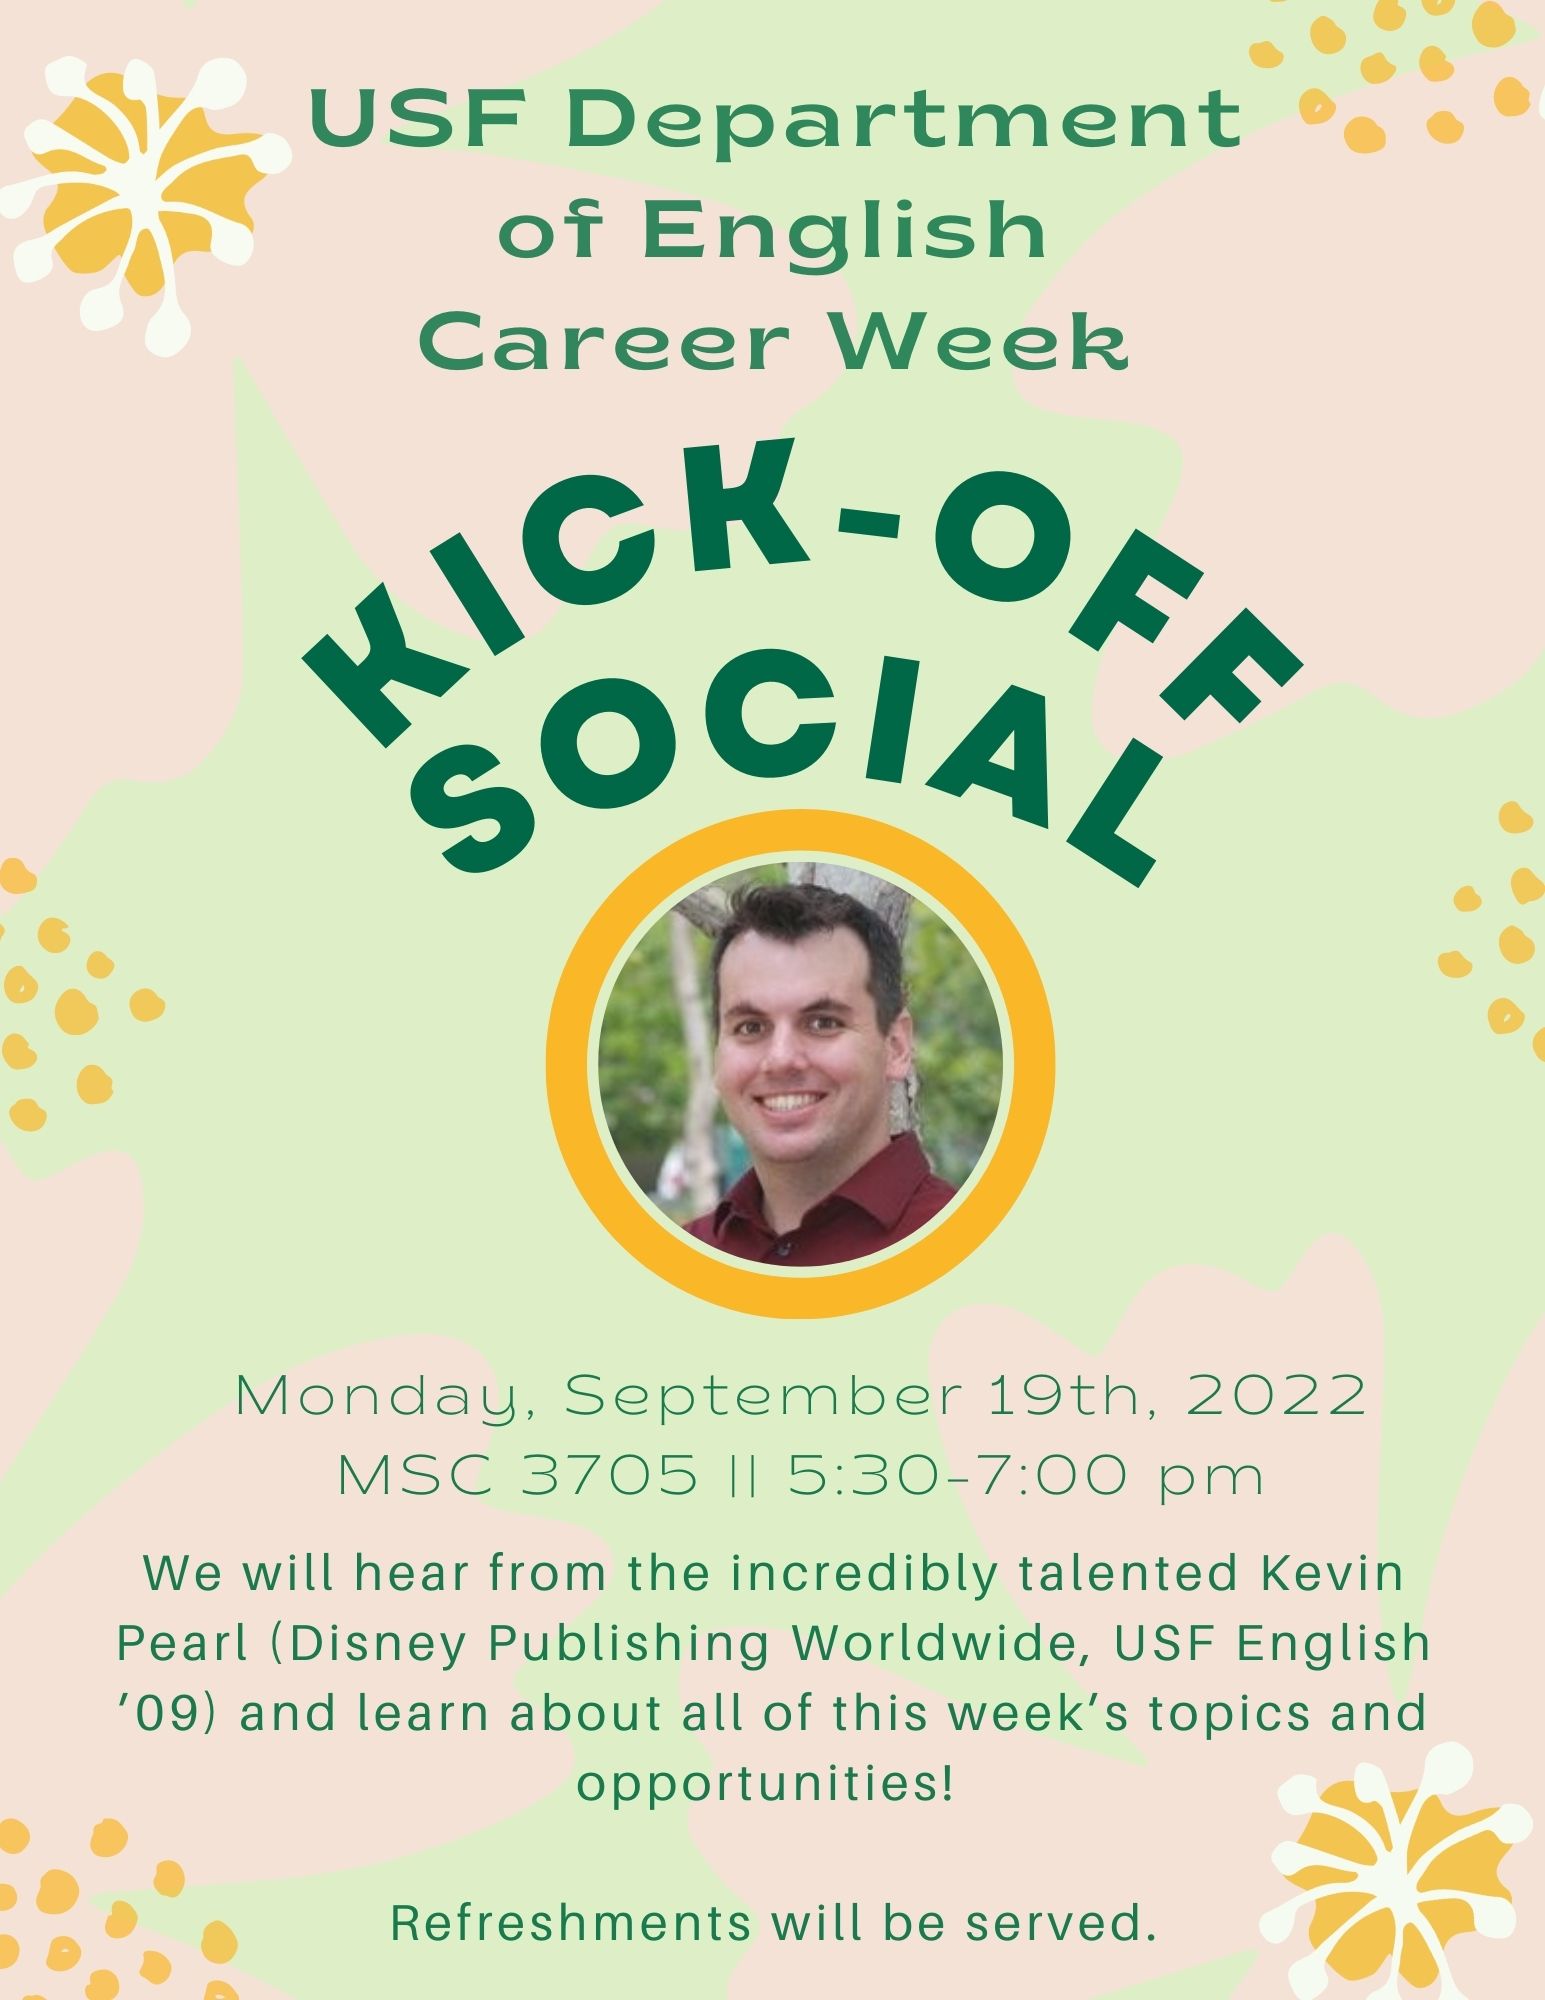 Career Week Kick-off Social || MSC 3705 5:30-7:00 pm 9/19